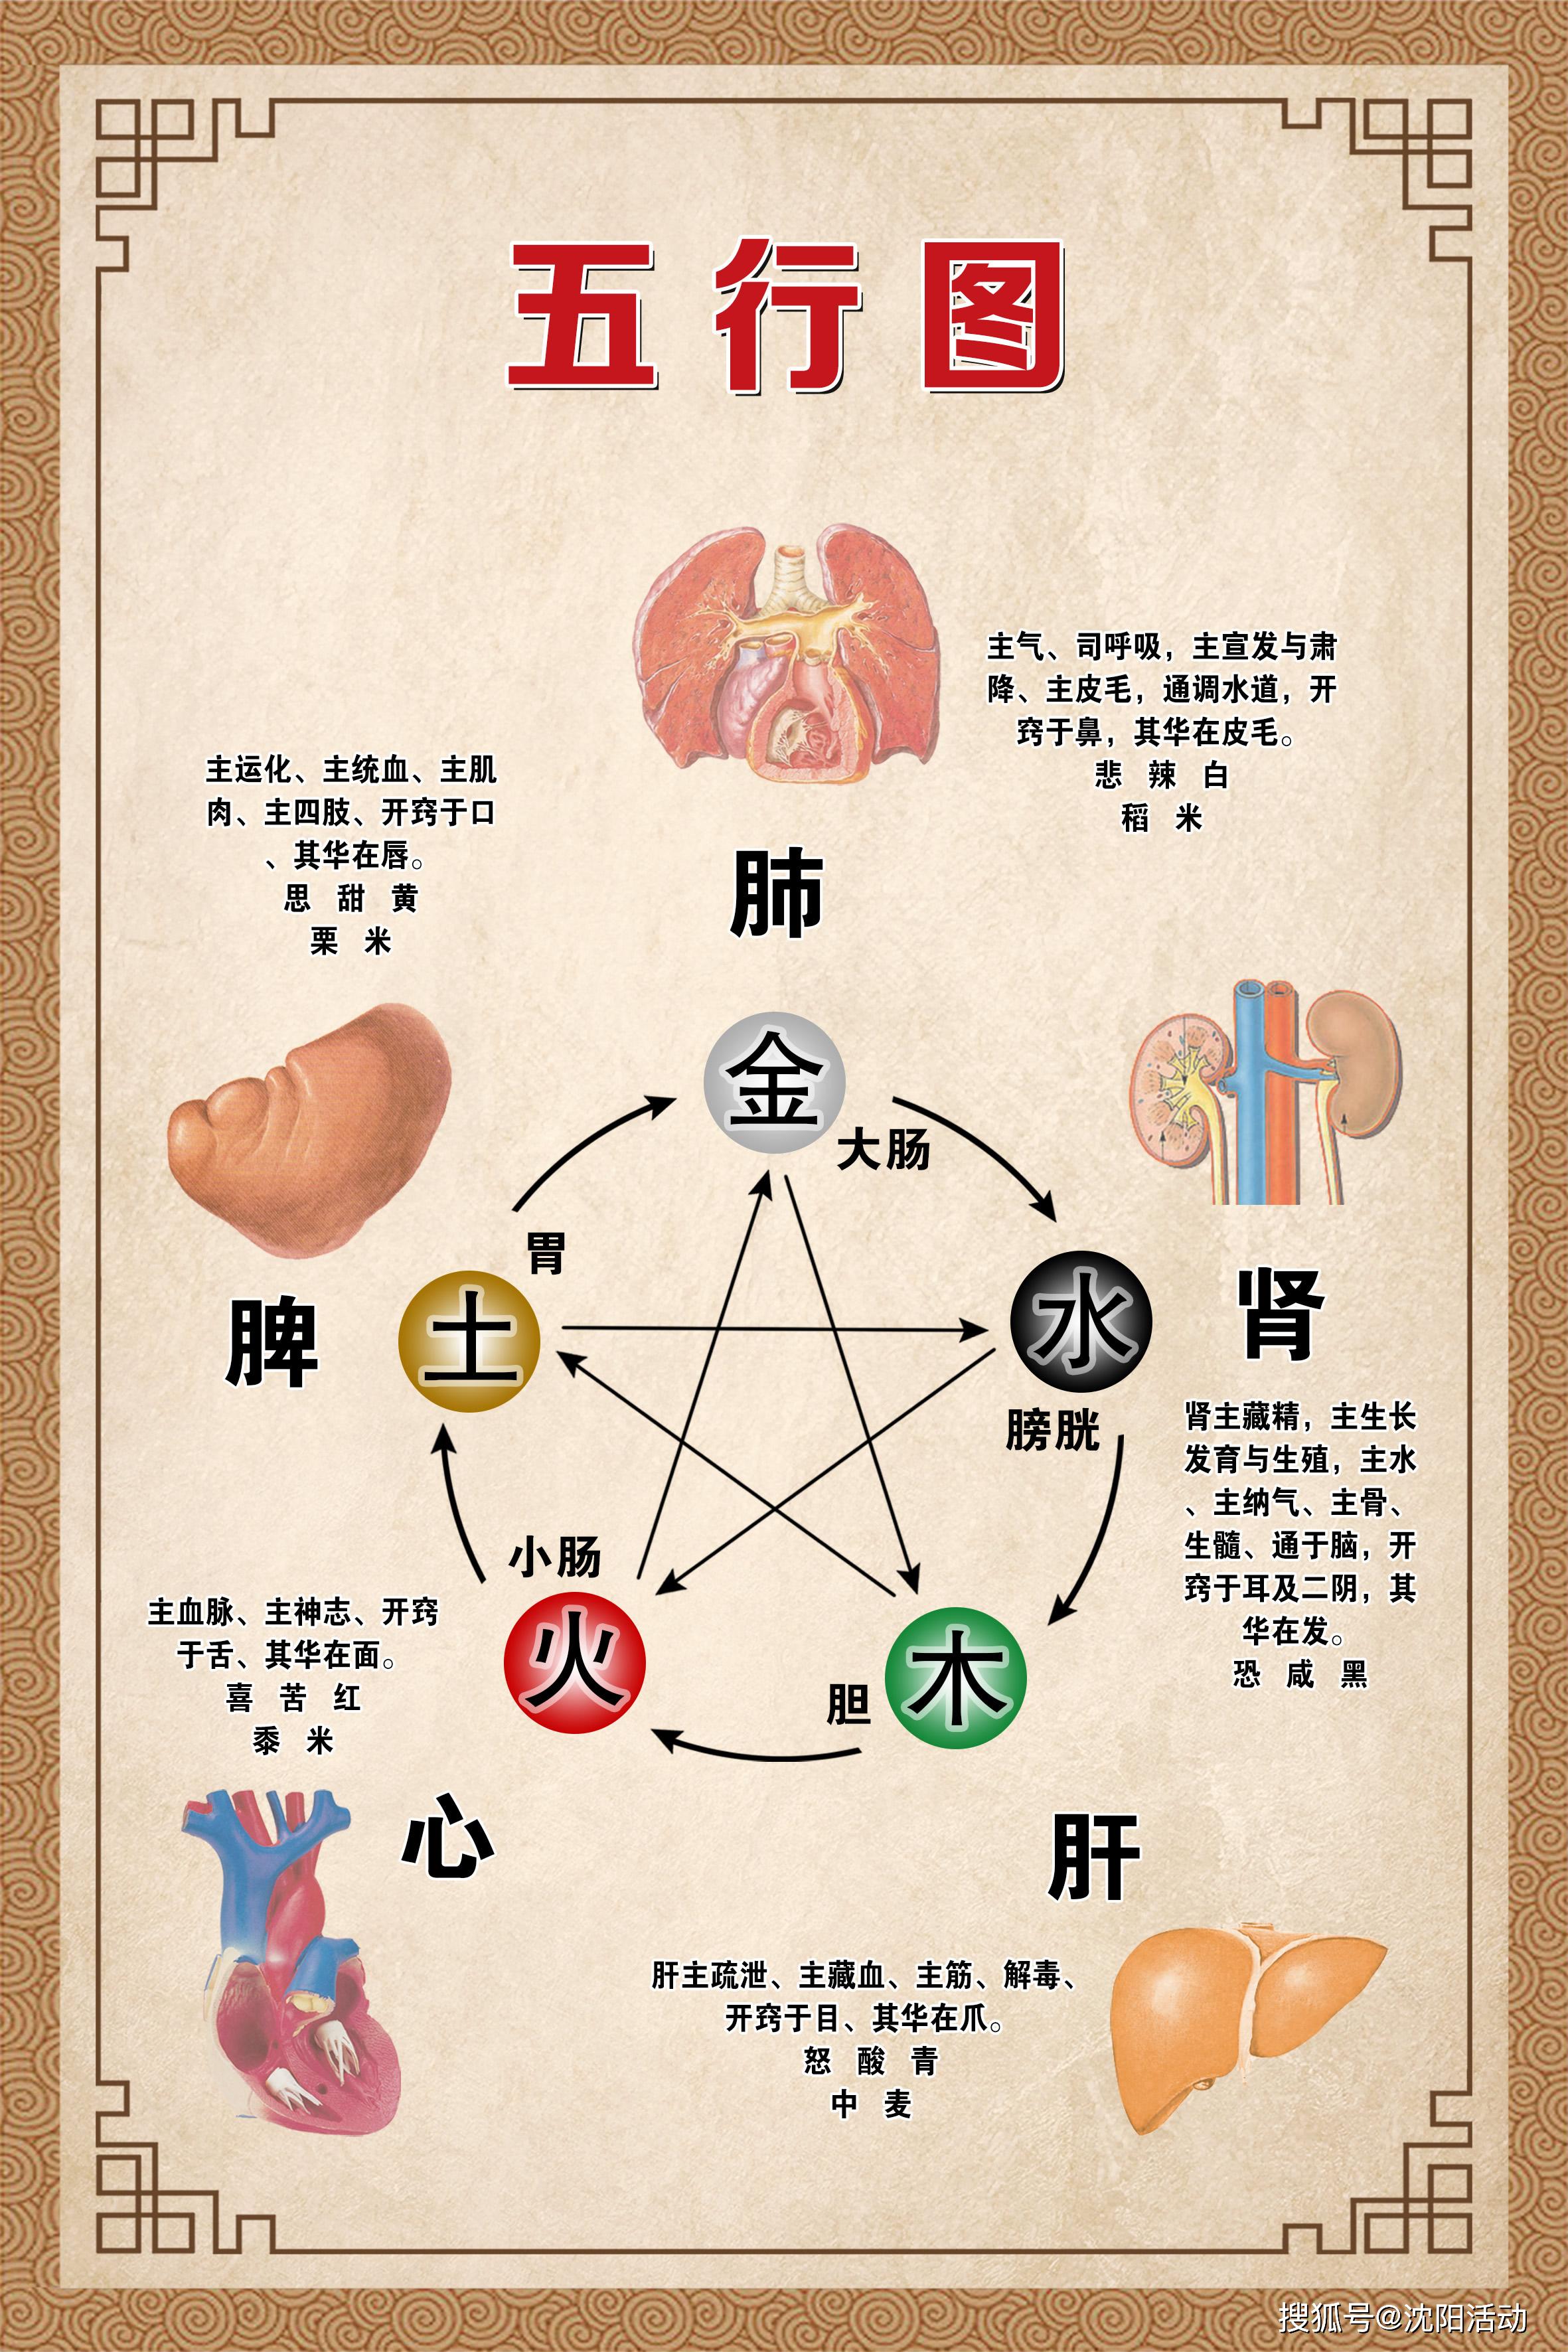 五脏包括肝,心,脾,肺,肾